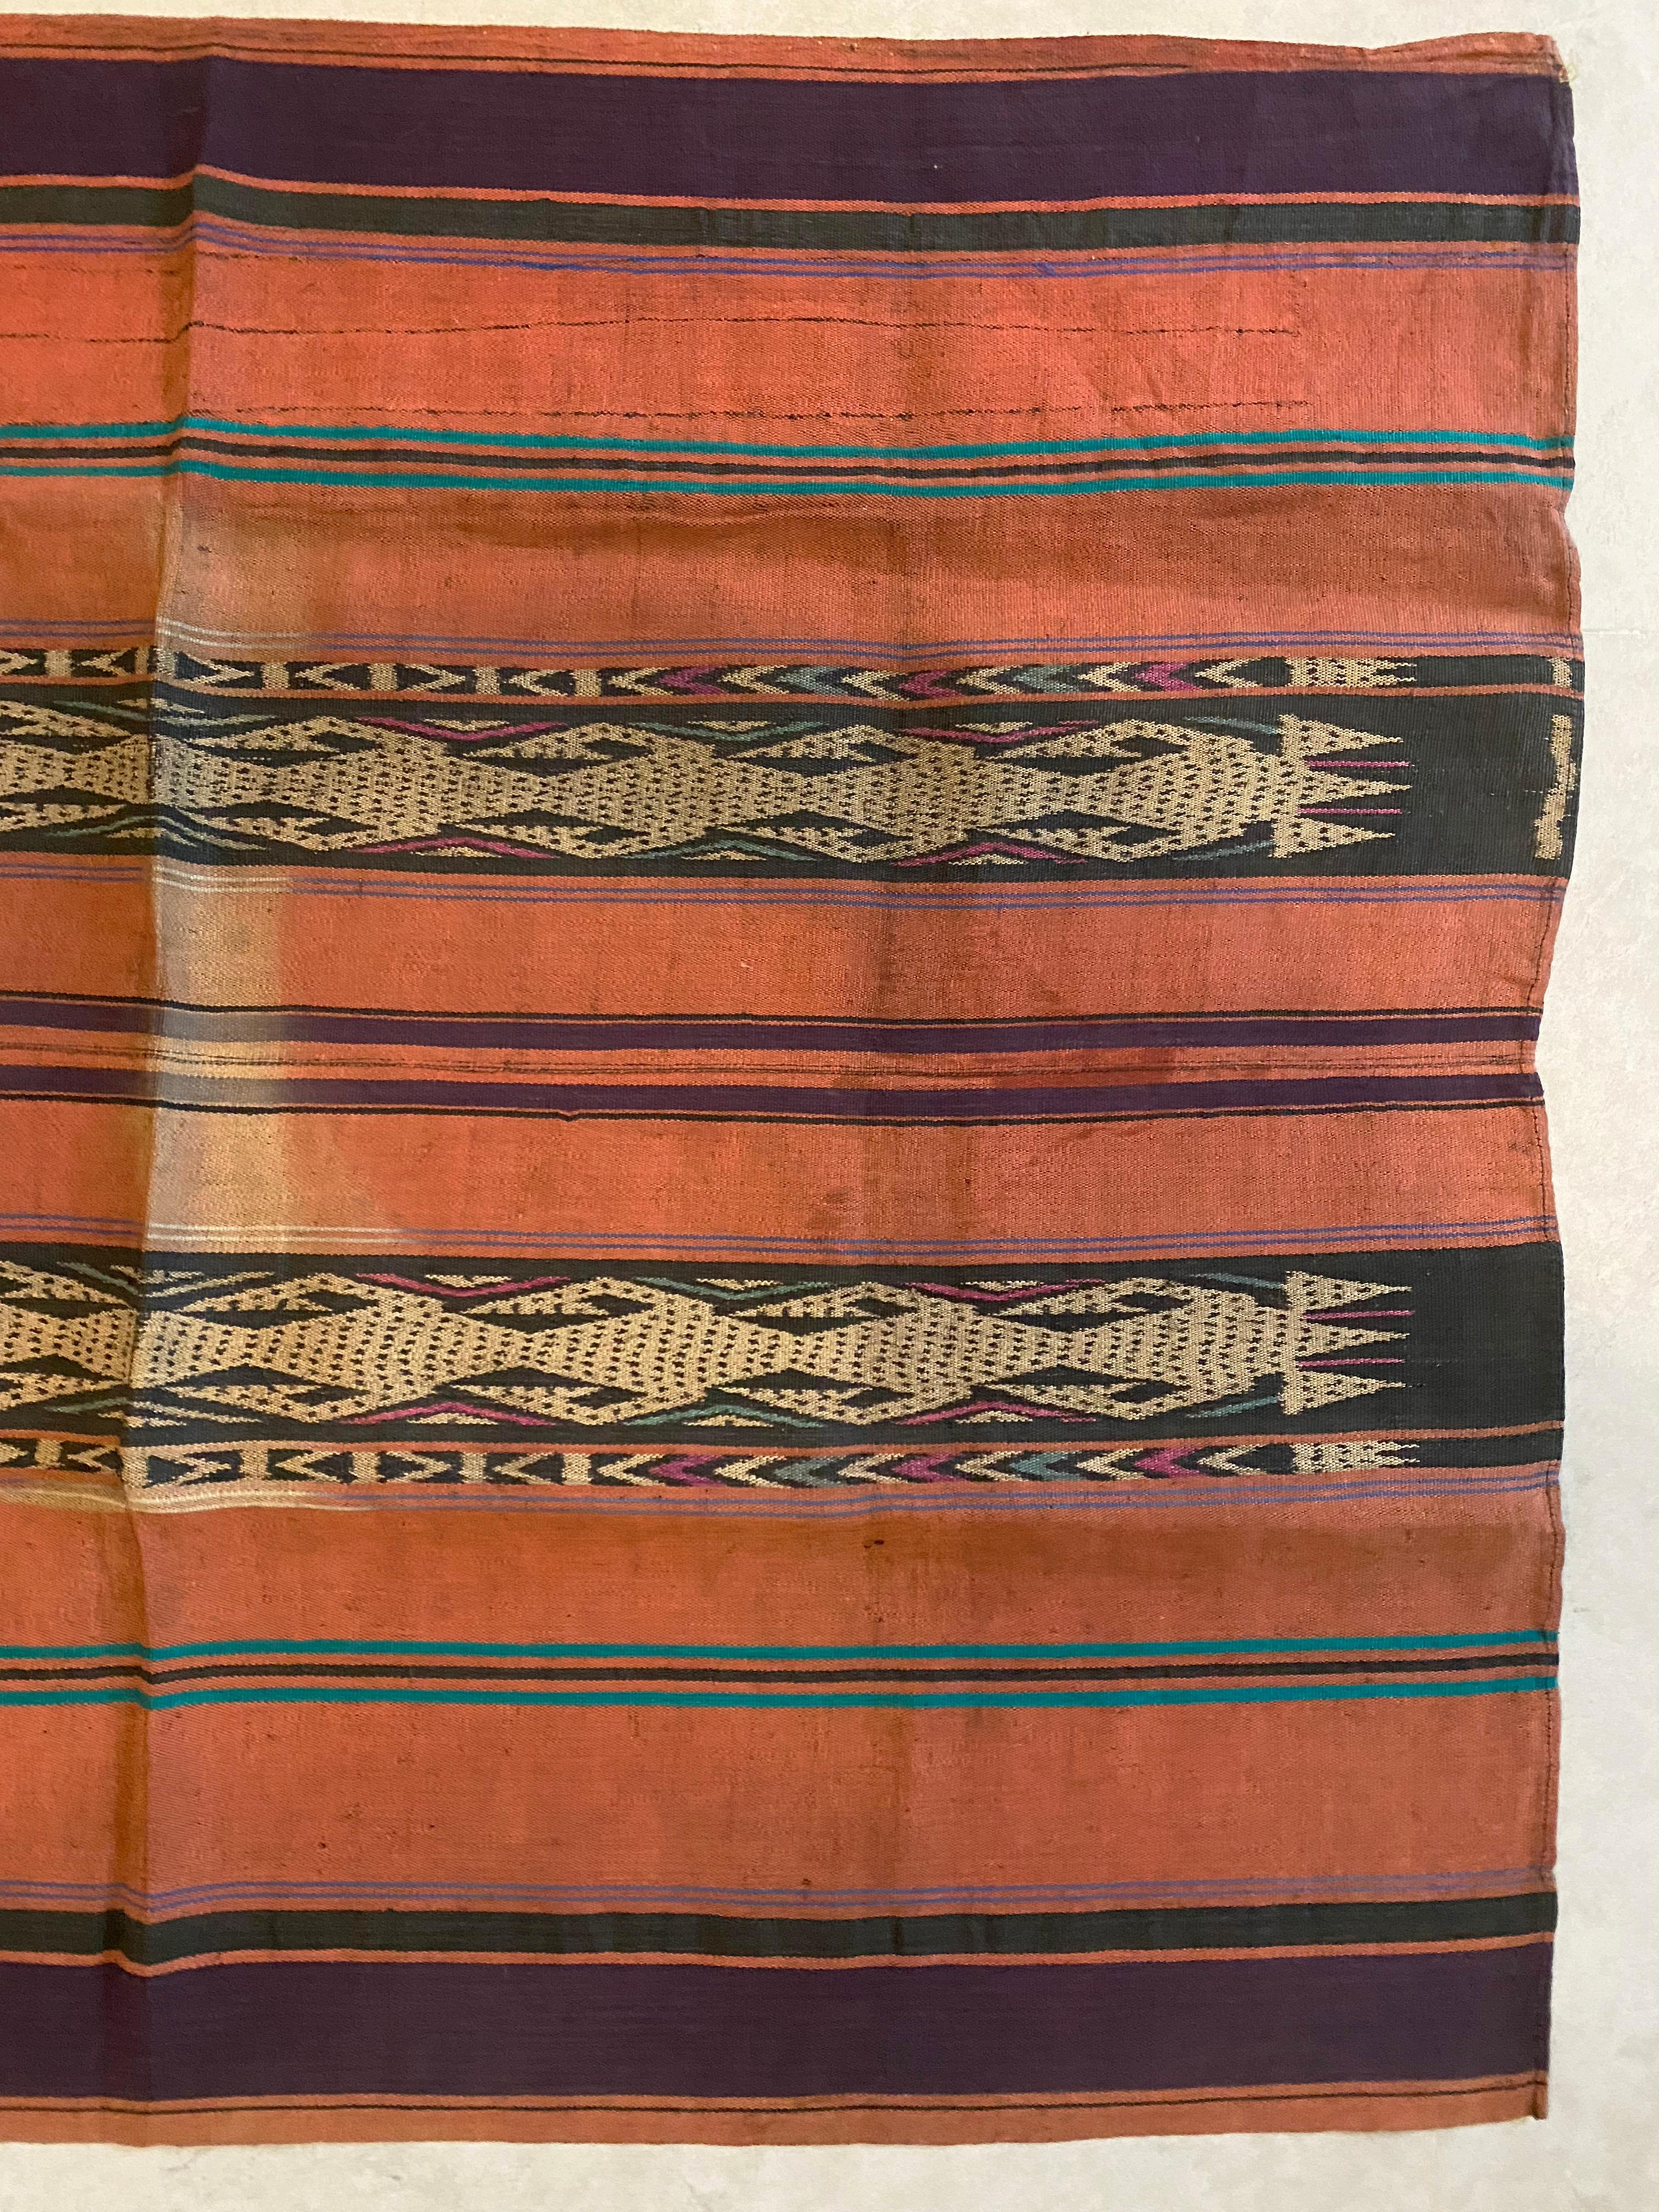 Dieses Ikat-Textil stammt von der Insel Kalimantan in Indonesien. Es wird aus natürlich gefärbten Garnen handgewebt, eine Methode, die von den Dayak-Stämmen, die über die ganze Insel verstreut leben, seit Generationen weitergegeben wird. Es zeichnet